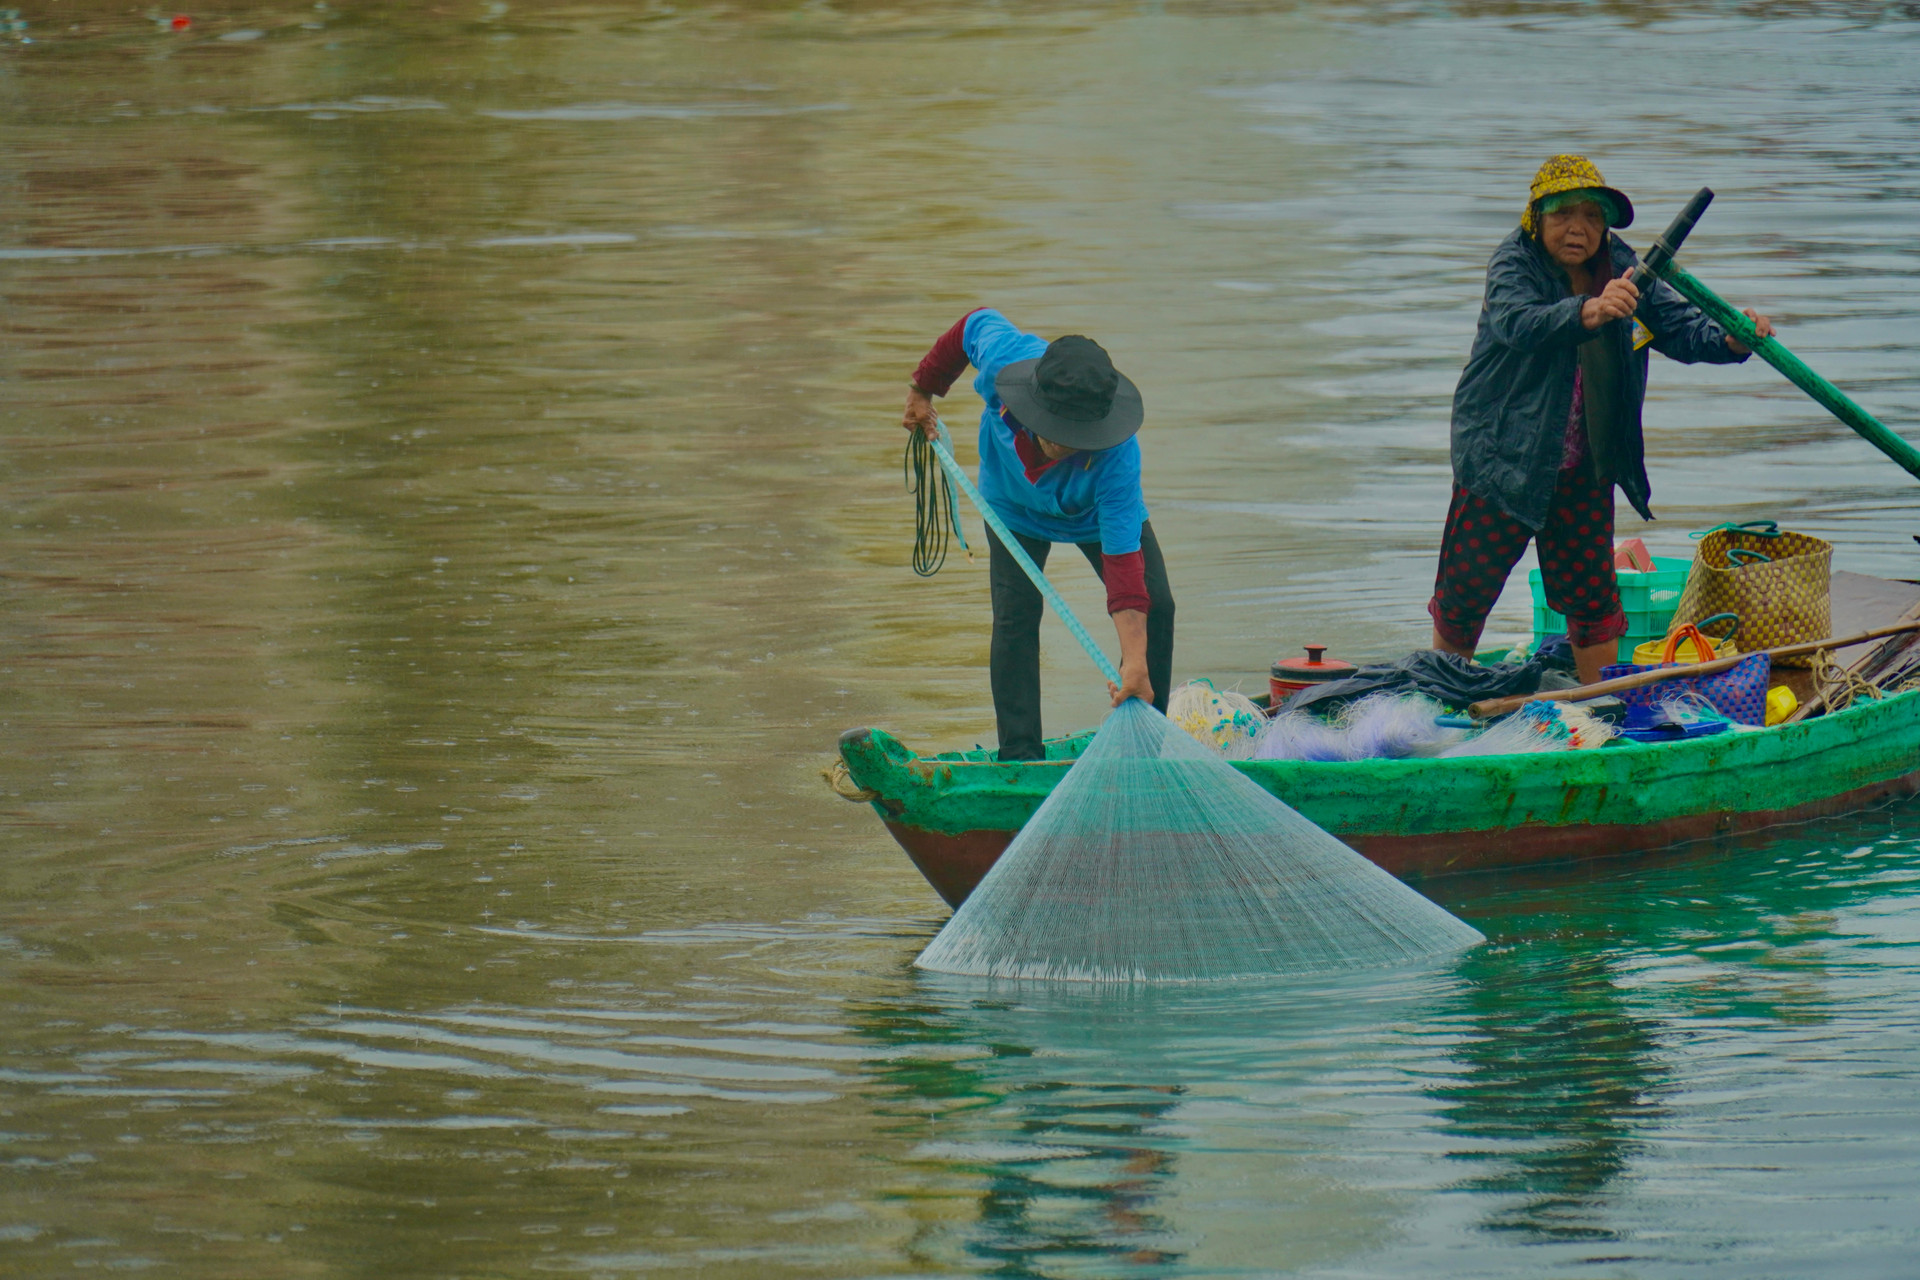 Một dòng sông nổi tiếng dài 76km qua thành phố Phan Phiết của Bình Thuận, có 2 vợ chồng hơn 30 năm đánh cá- Ảnh 6.